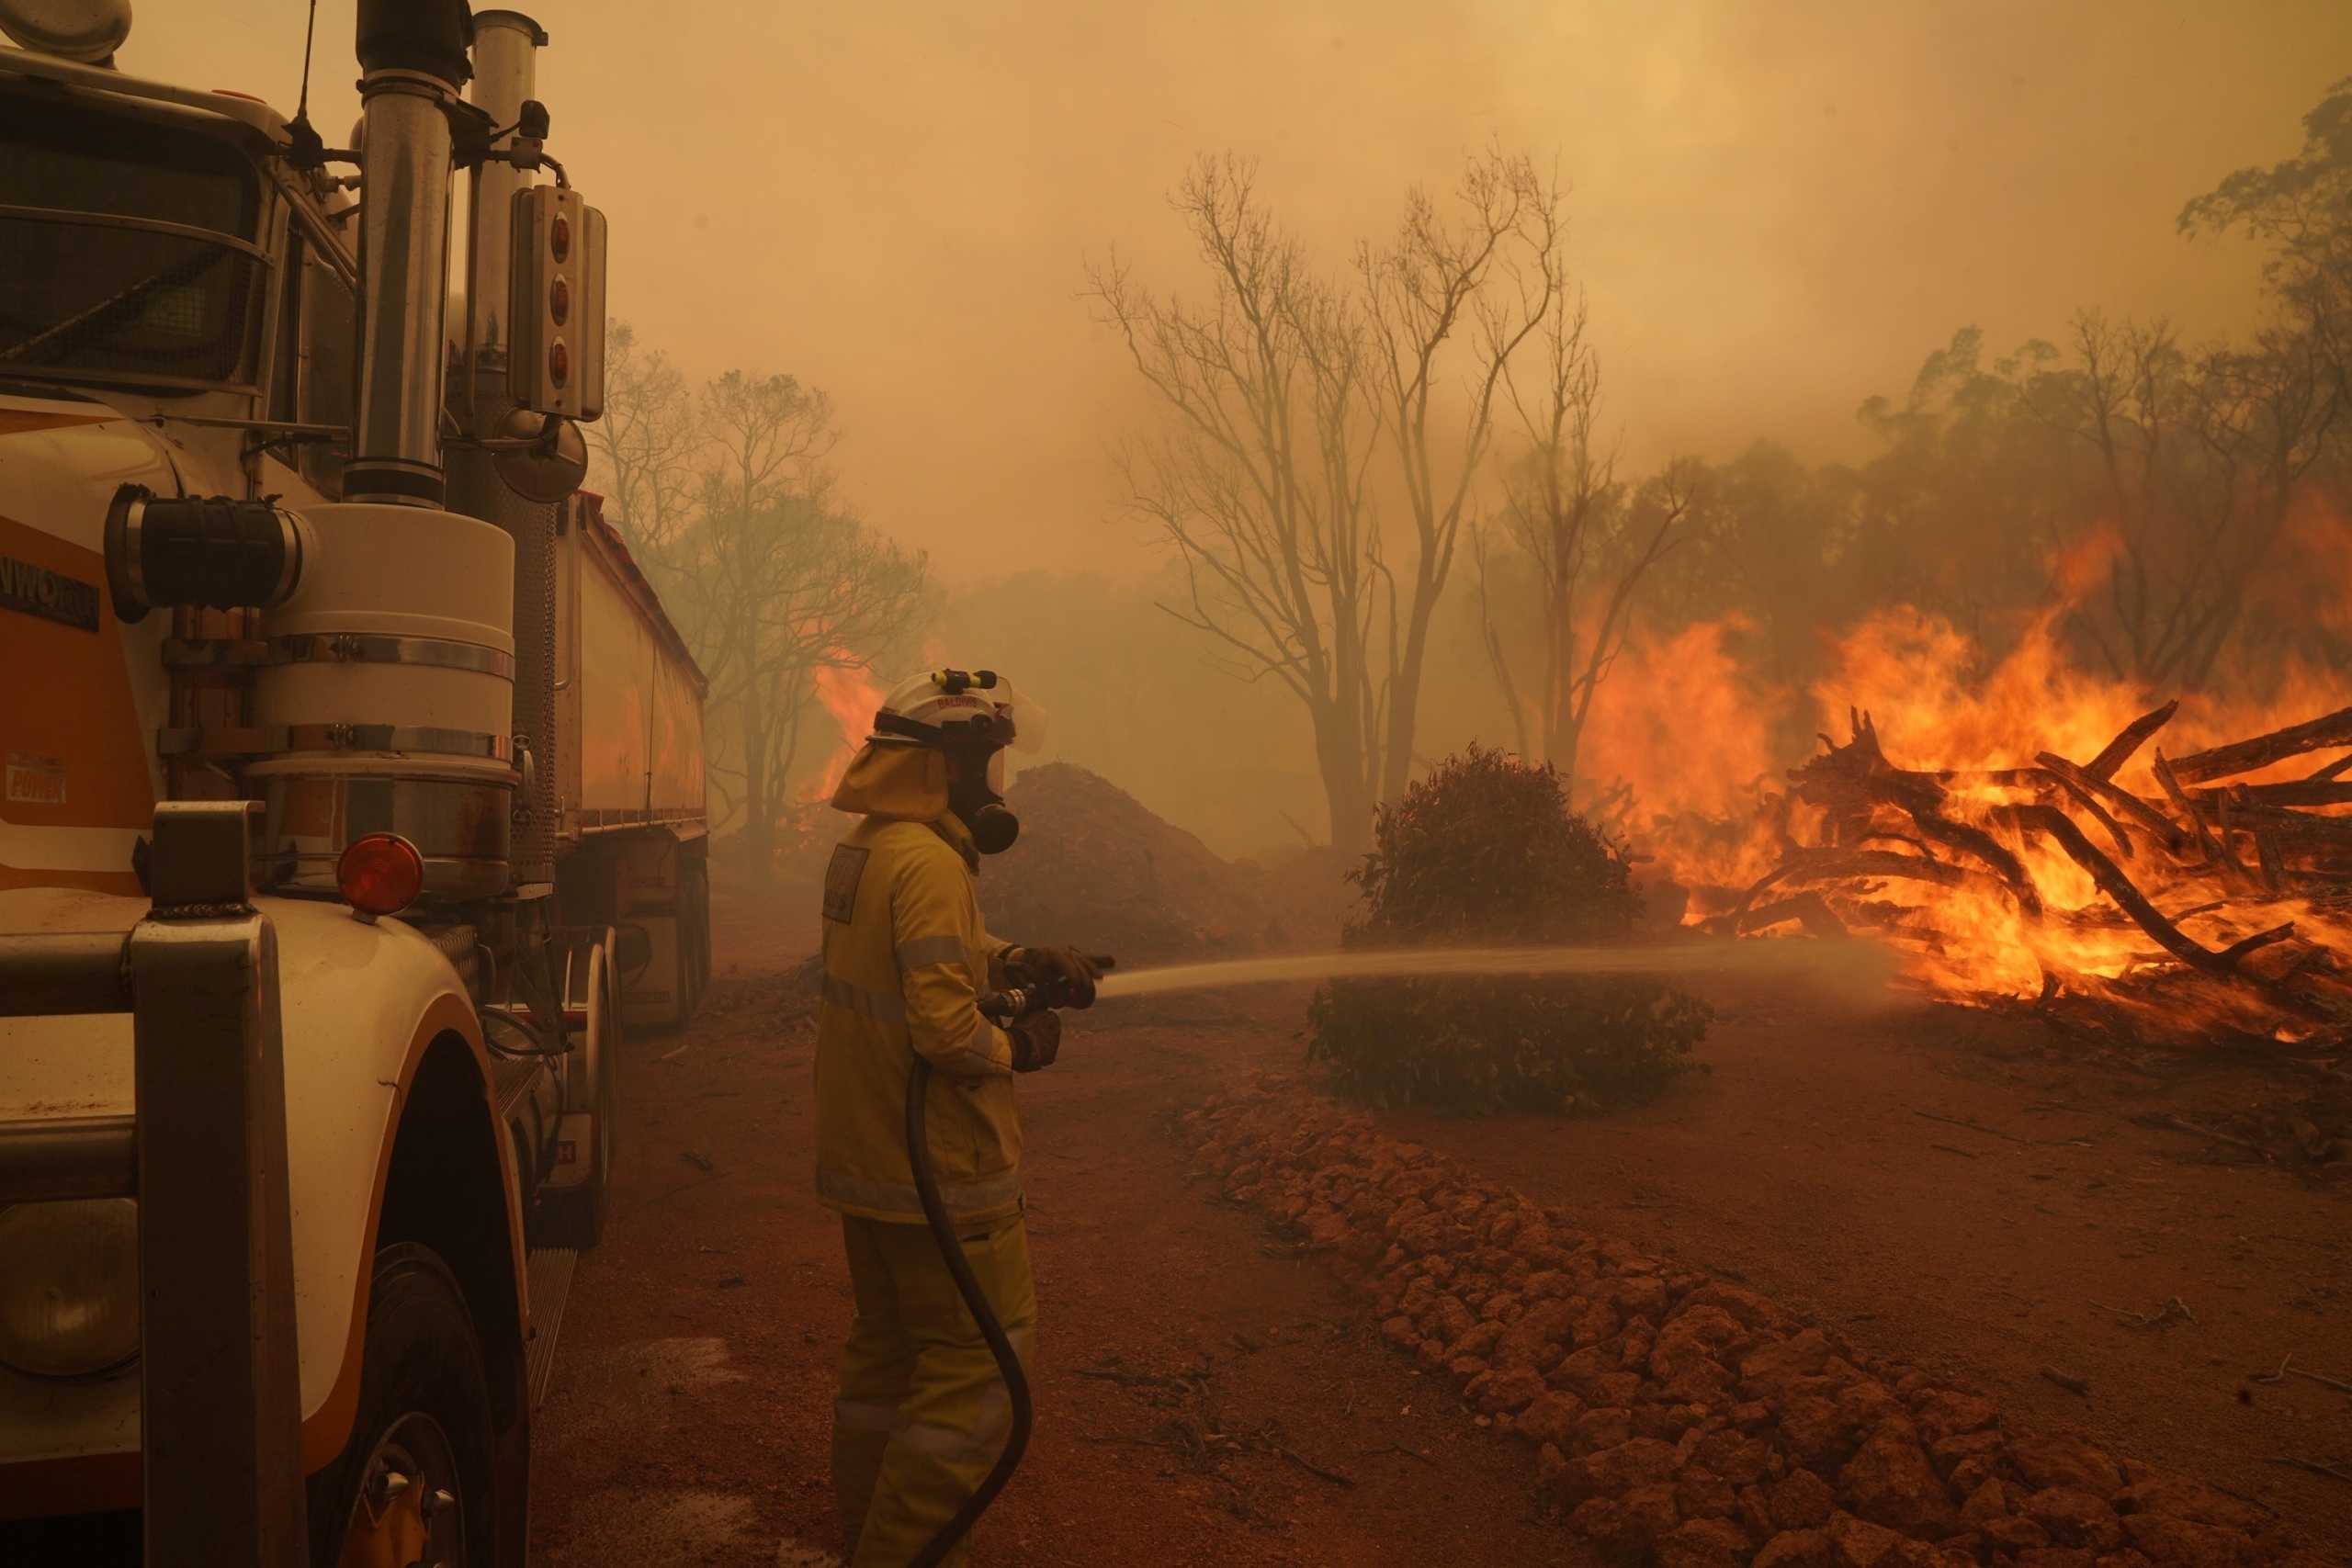 Αυστραλία: Φωτιές κατακαίνε μεγάλες περιοχές στο Περθ – Στάχτη δεκάδες σπίτια